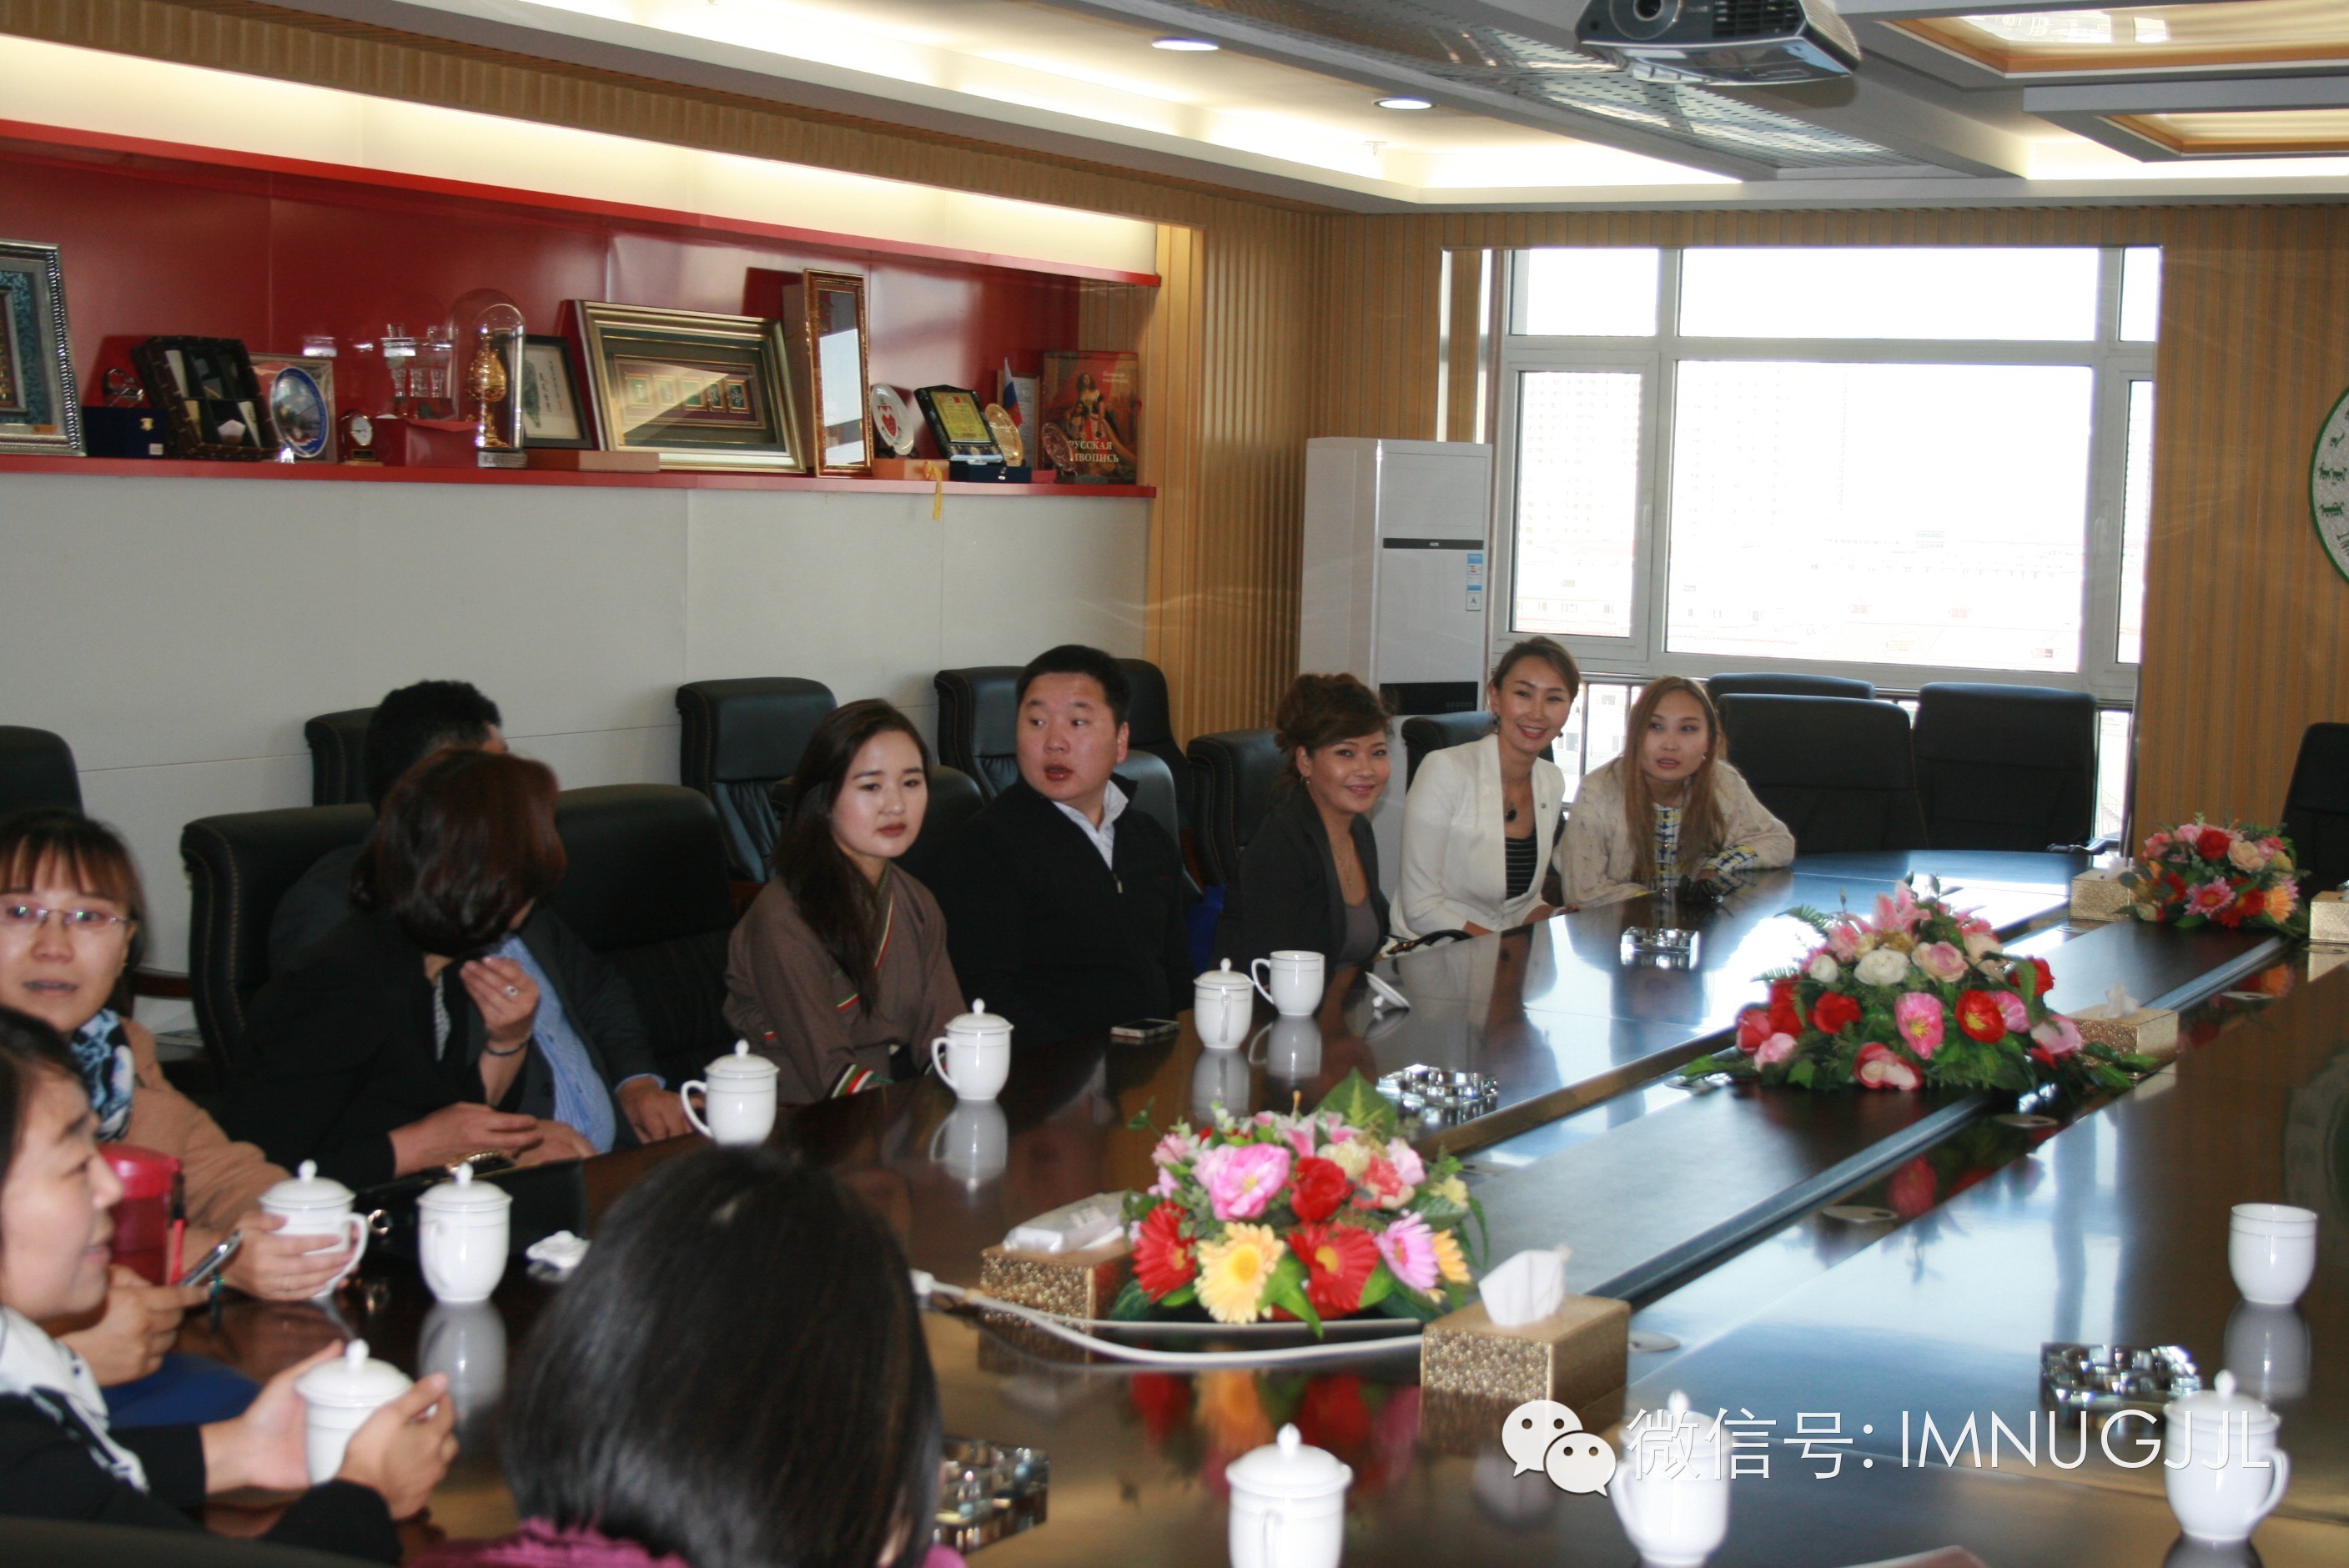 The Alumni from Mongolia Visit IMNU